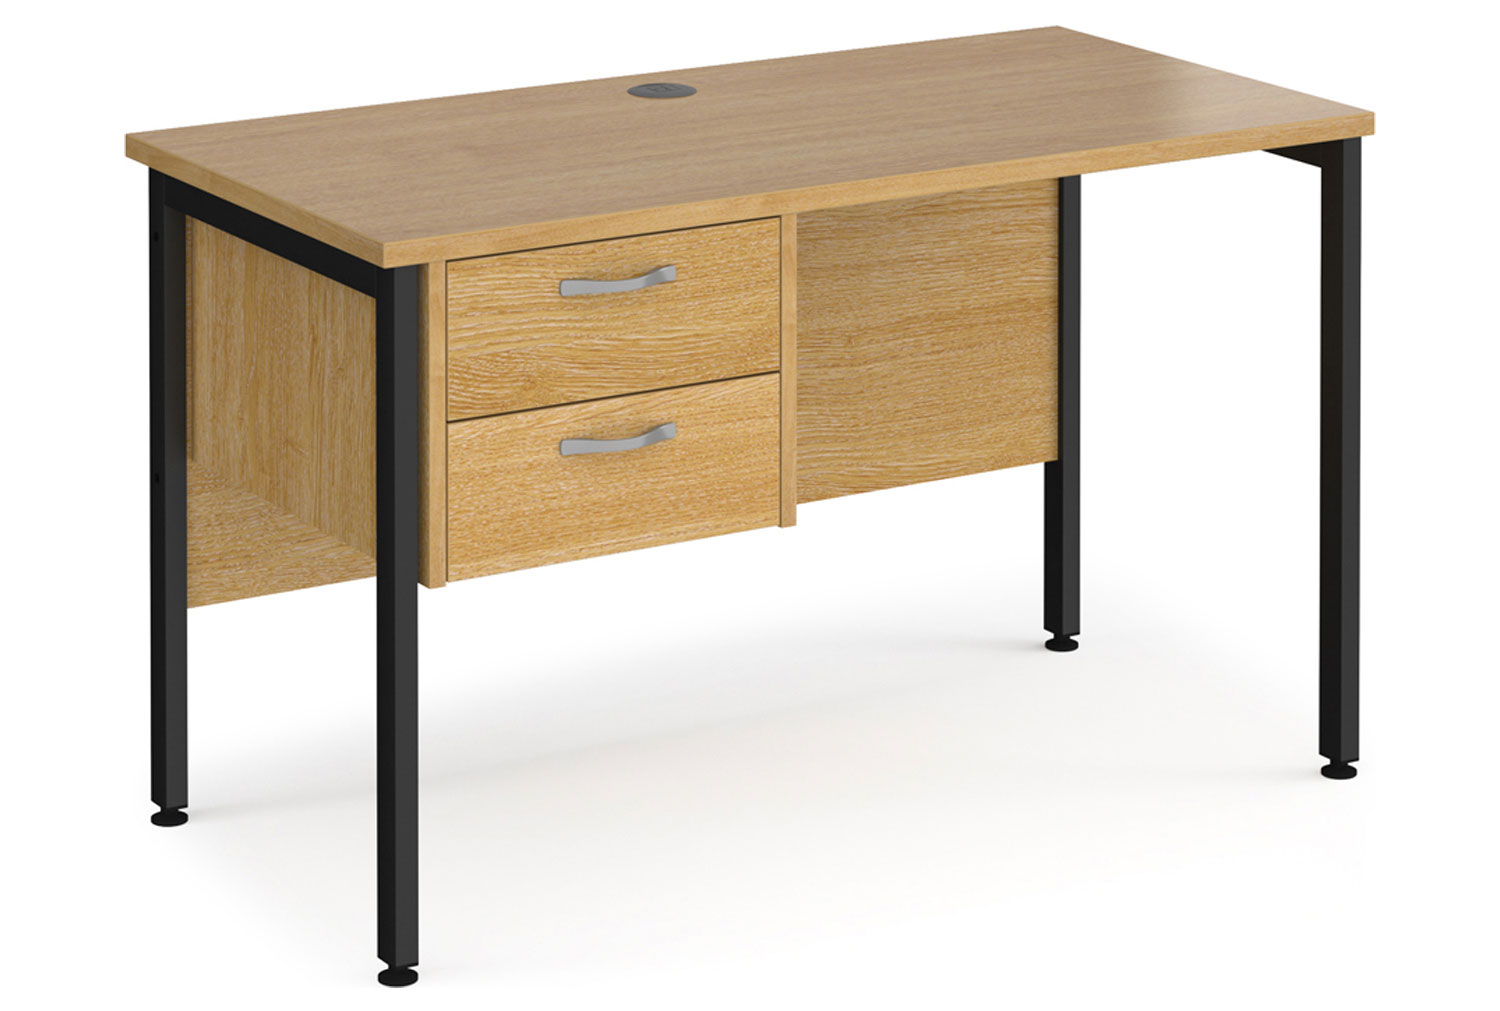 Value Line Deluxe H-Leg Narrow Rectangular Office Desk 2 Drawers (Black Legs), 120wx60dx73h (cm), Oak, Fully Installed